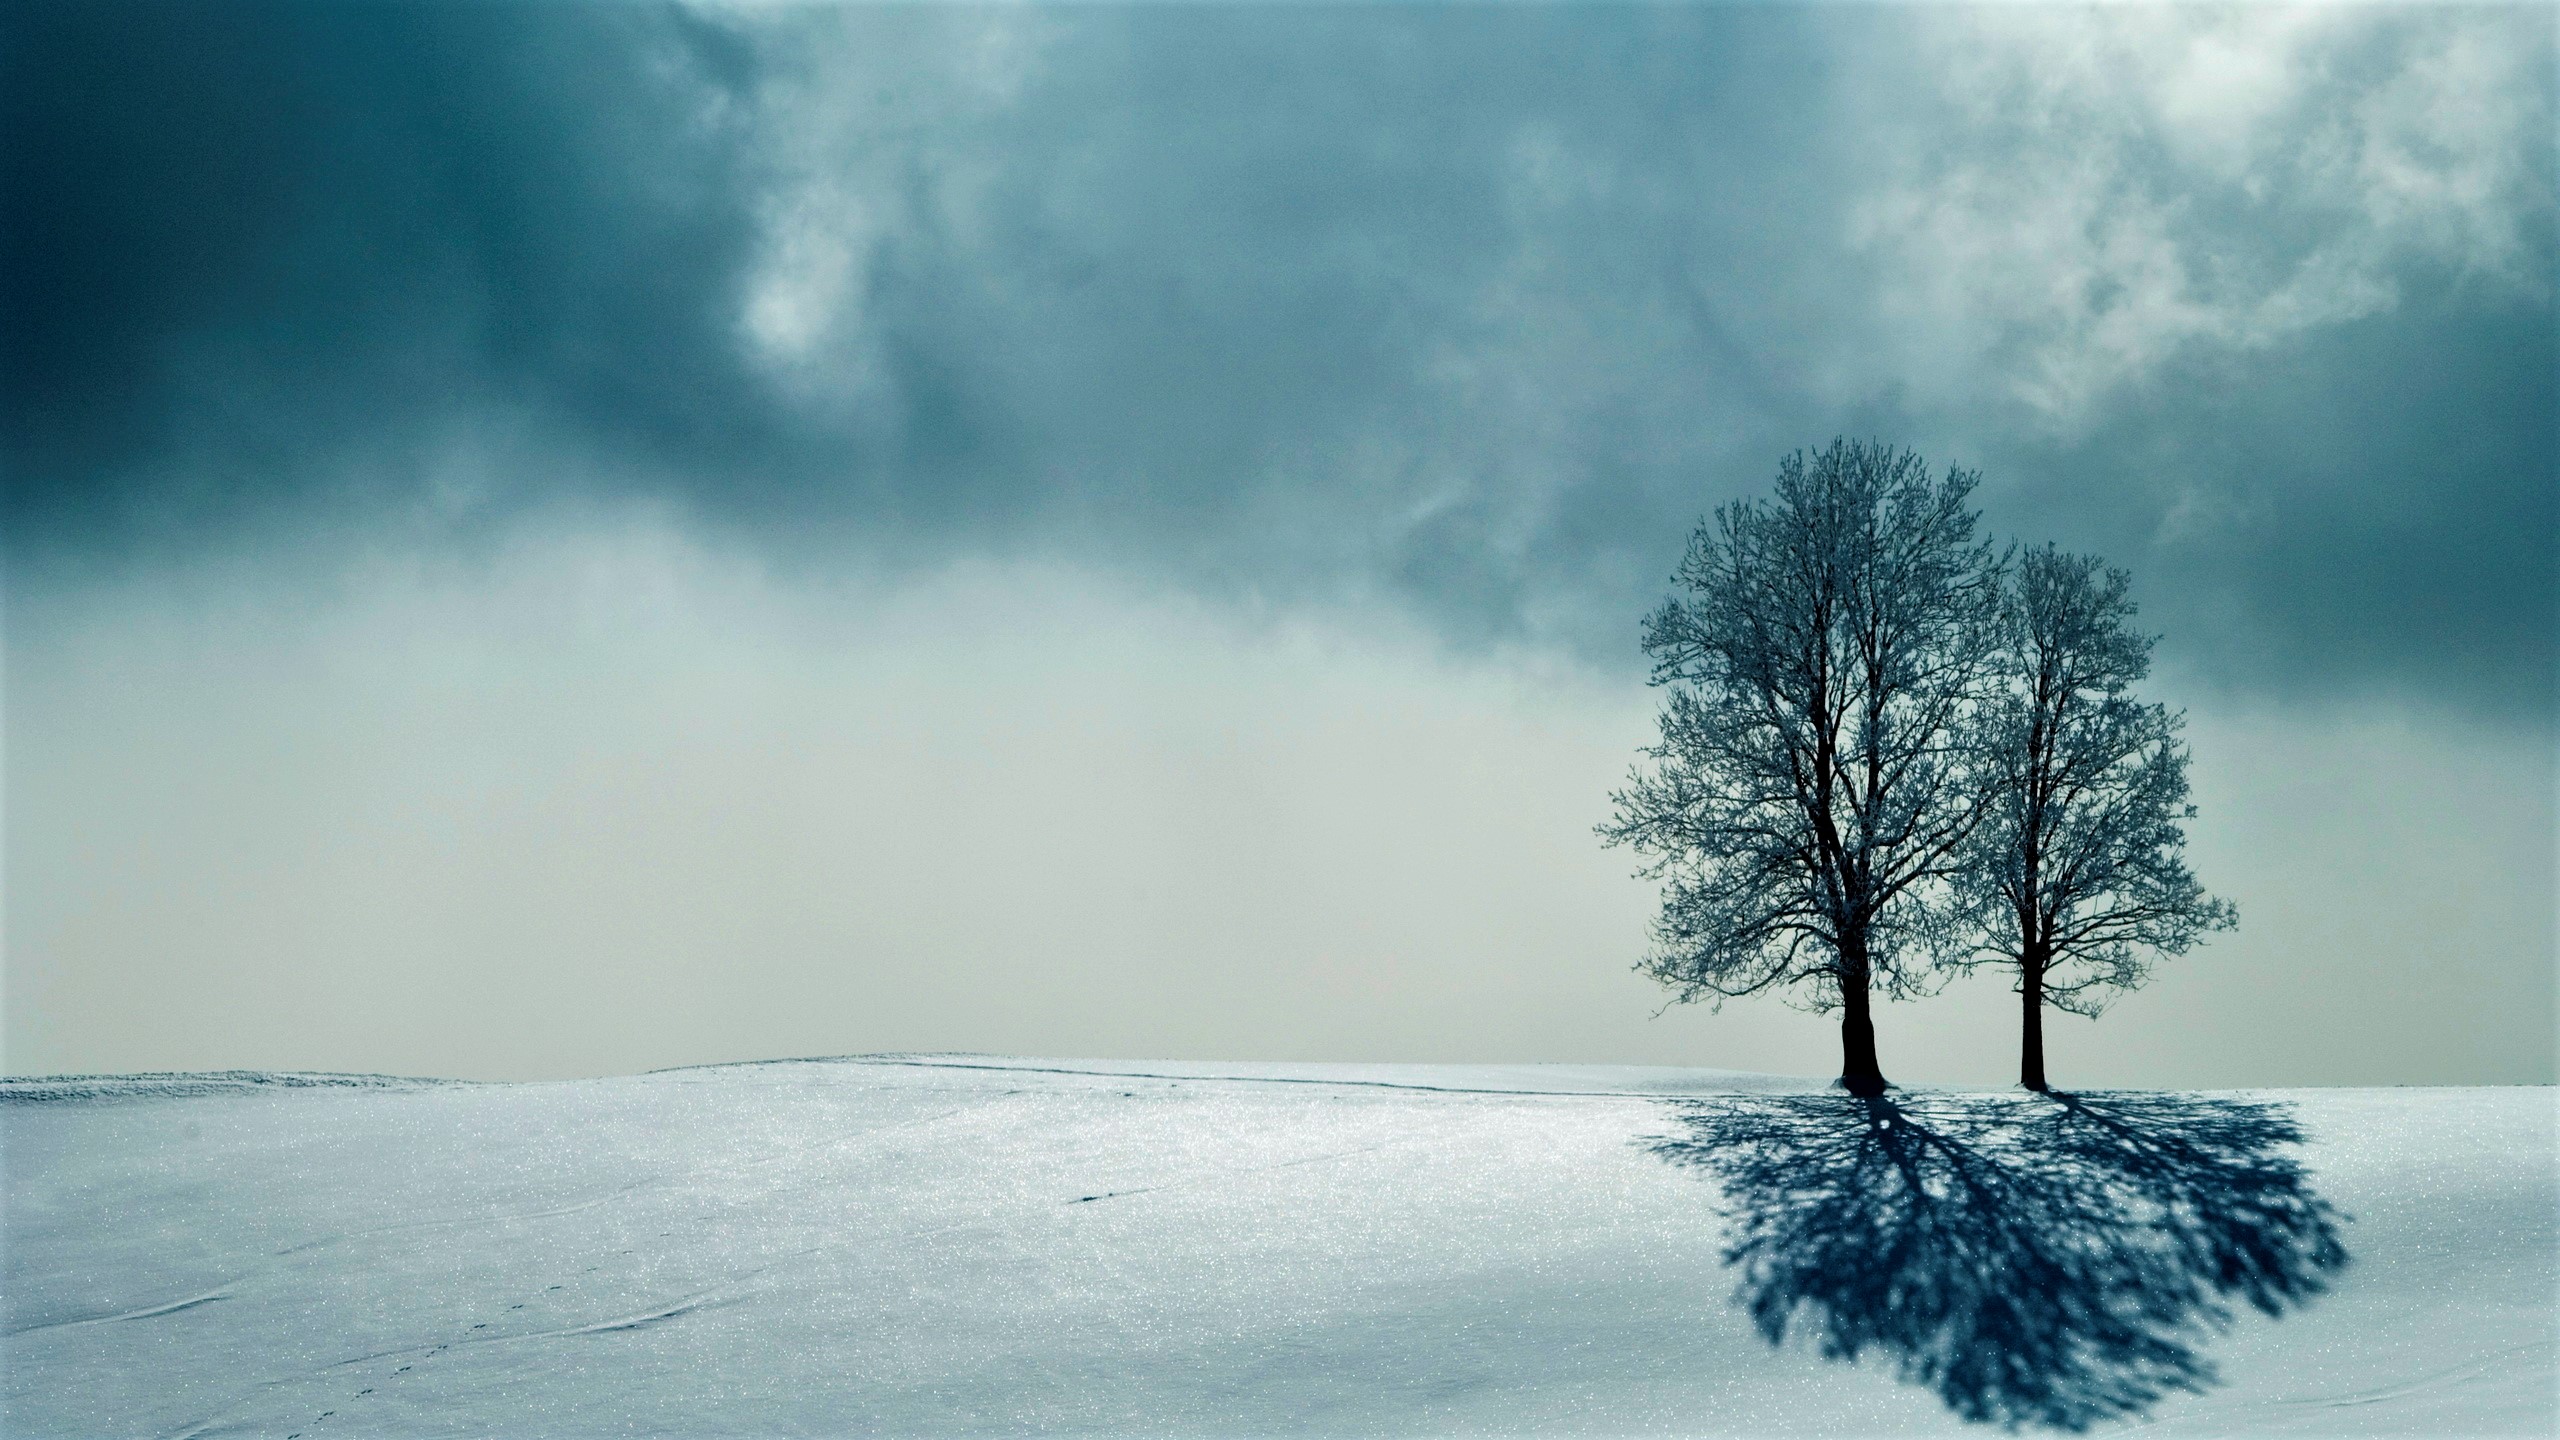 Скачать обои бесплатно Зима, Снег, Дерево, Тень, Земля/природа картинка на рабочий стол ПК